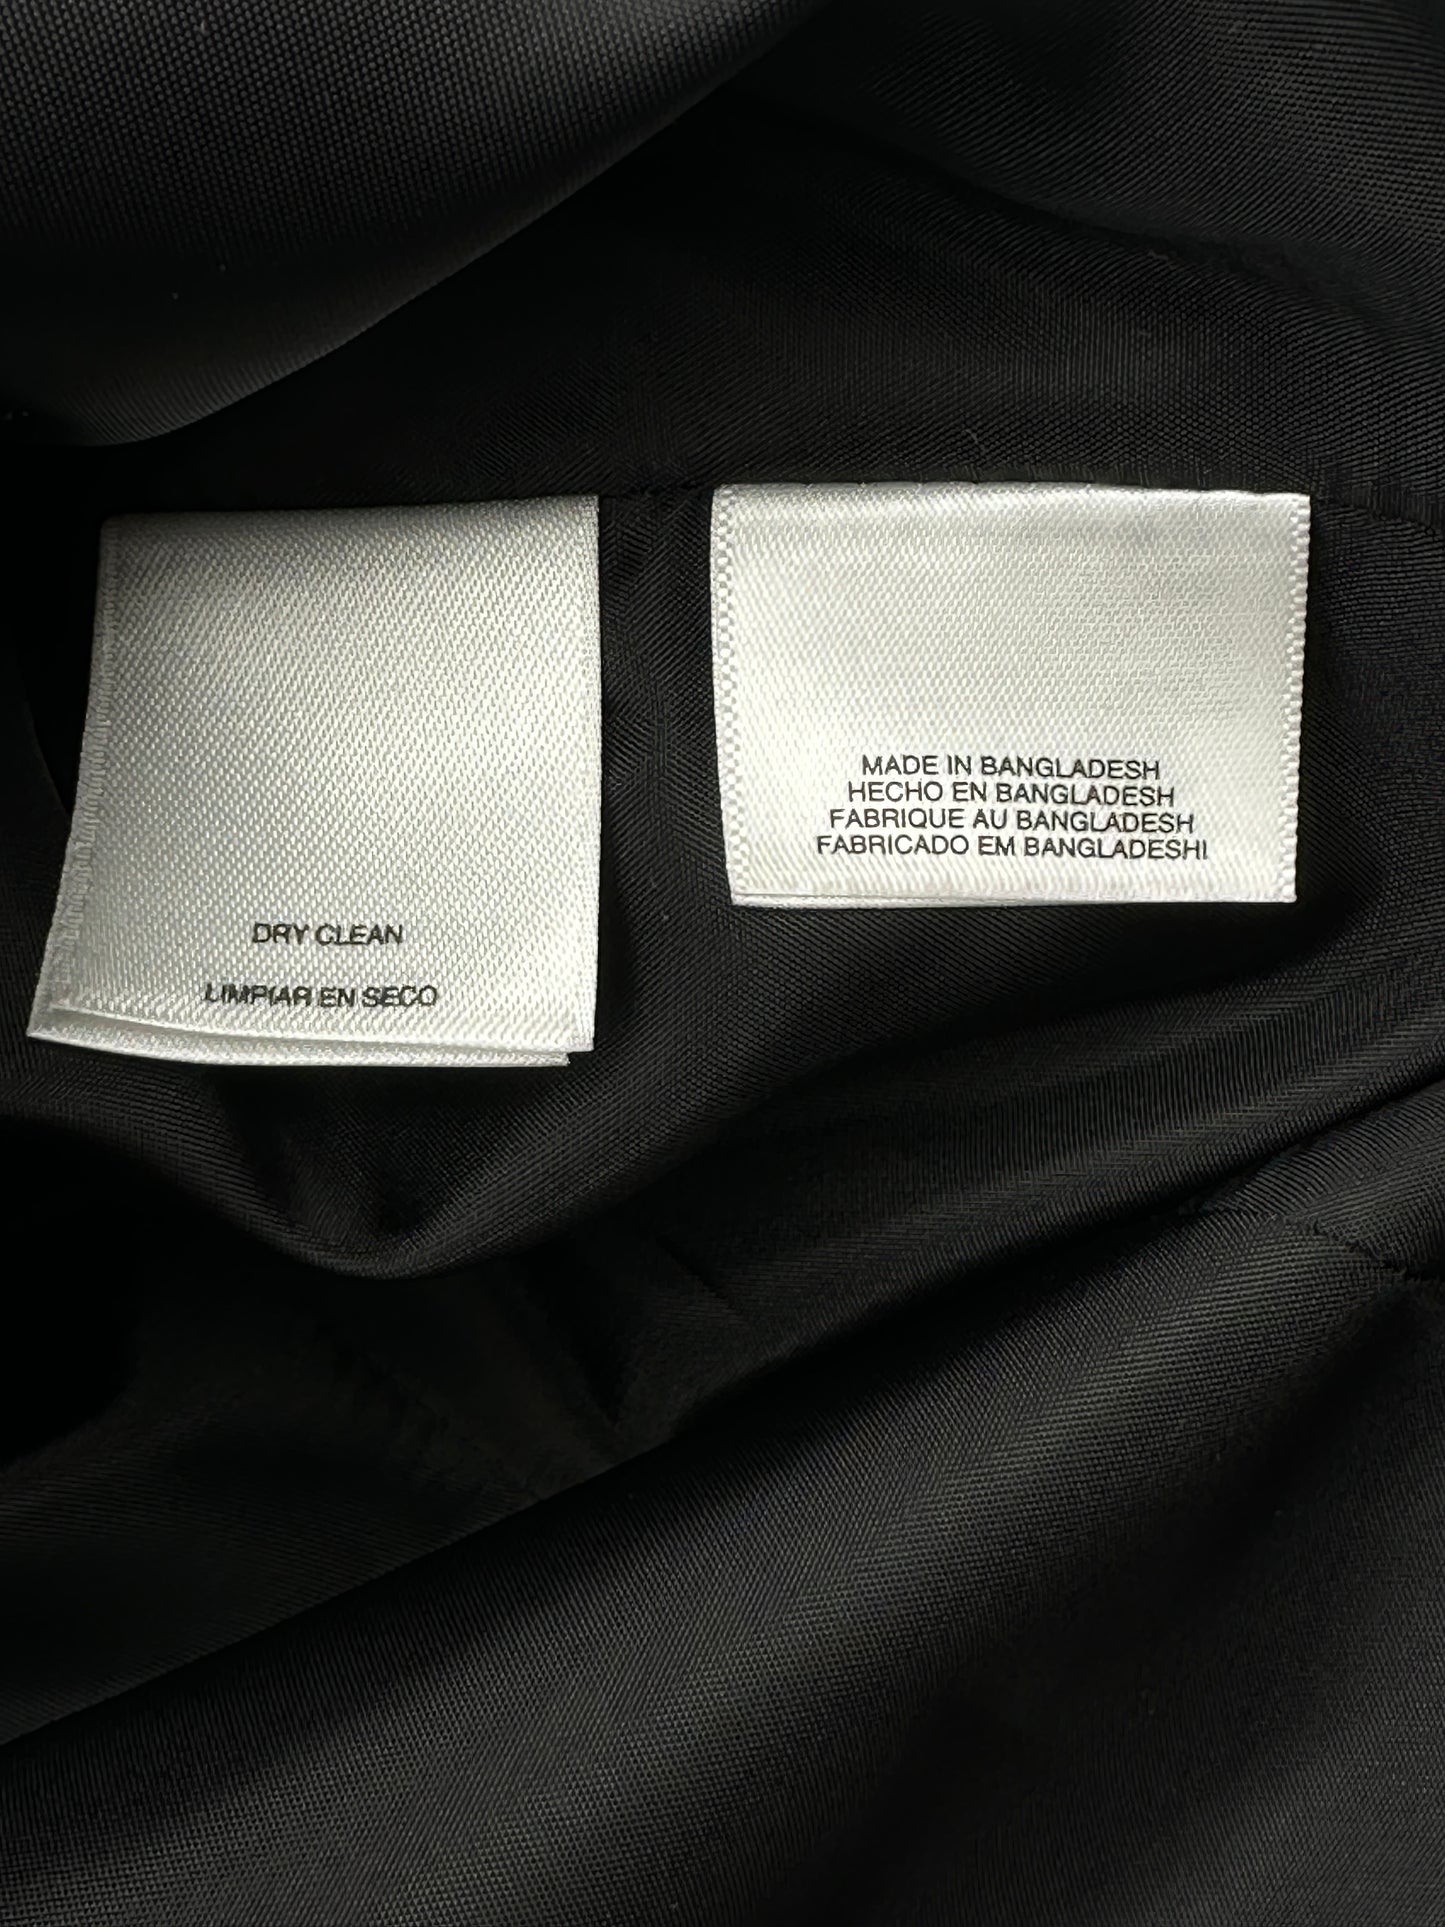 Nine West Size 10 Black Denim Blazer Jacket